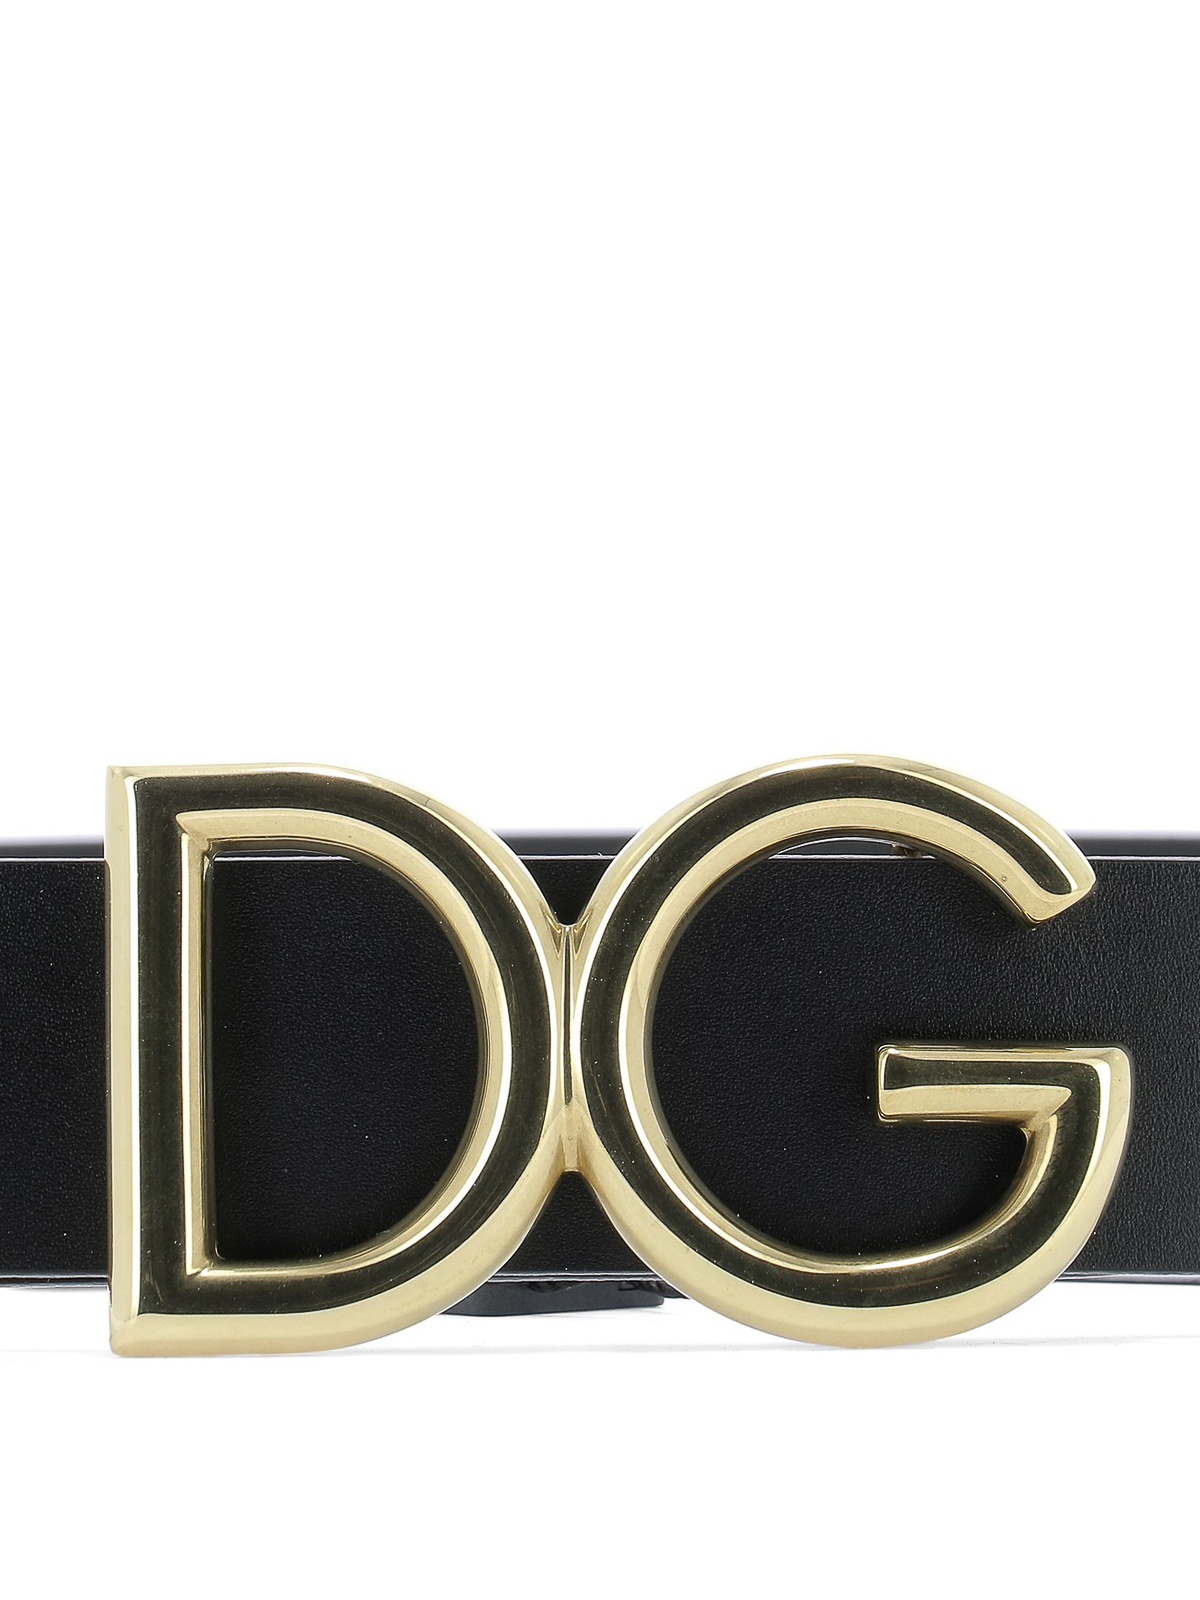 Belts Dolce & Gabbana - DG buckled black leather belt - BC4248AC4938G929